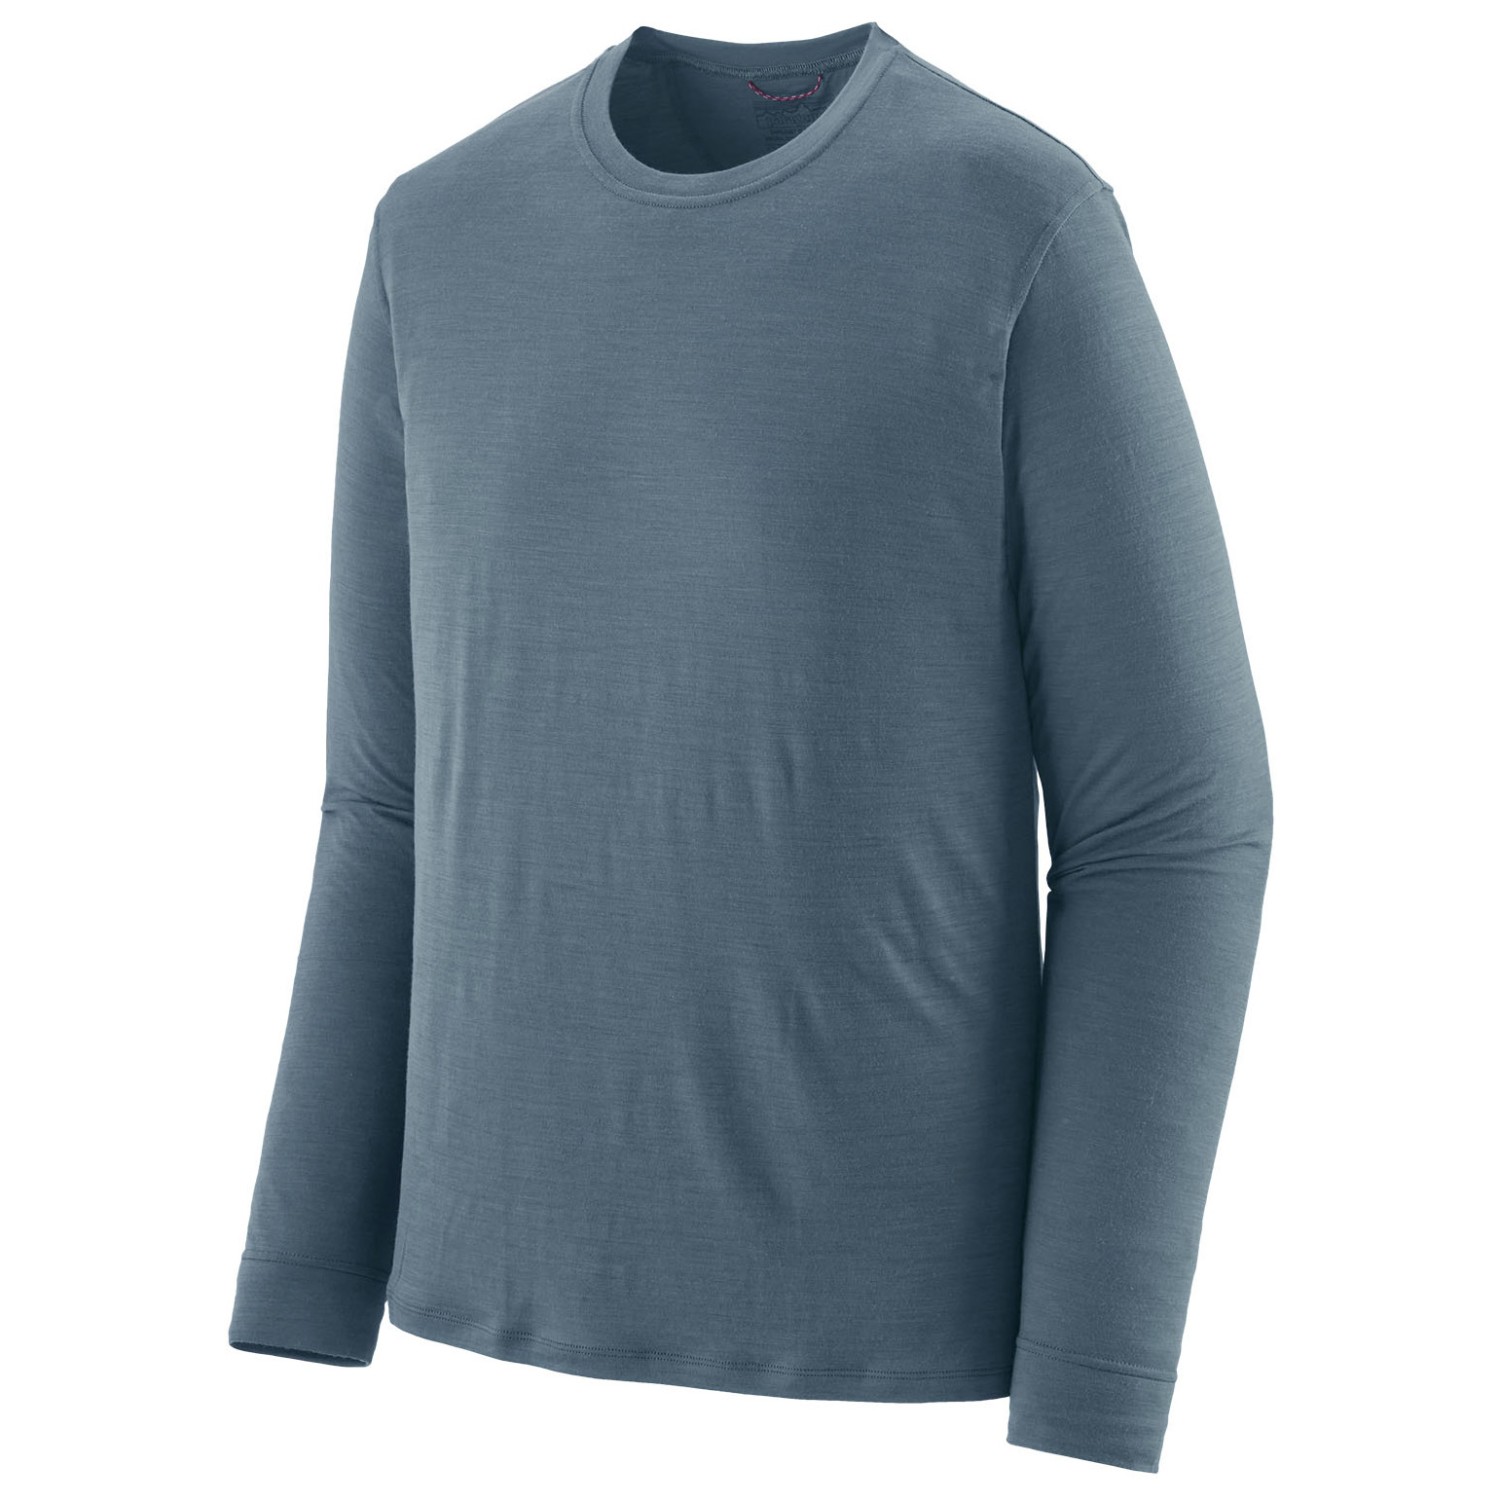 Рубашка из мериноса Patagonia L/S Cap Cool Merino Shirt, цвет Utility Blue